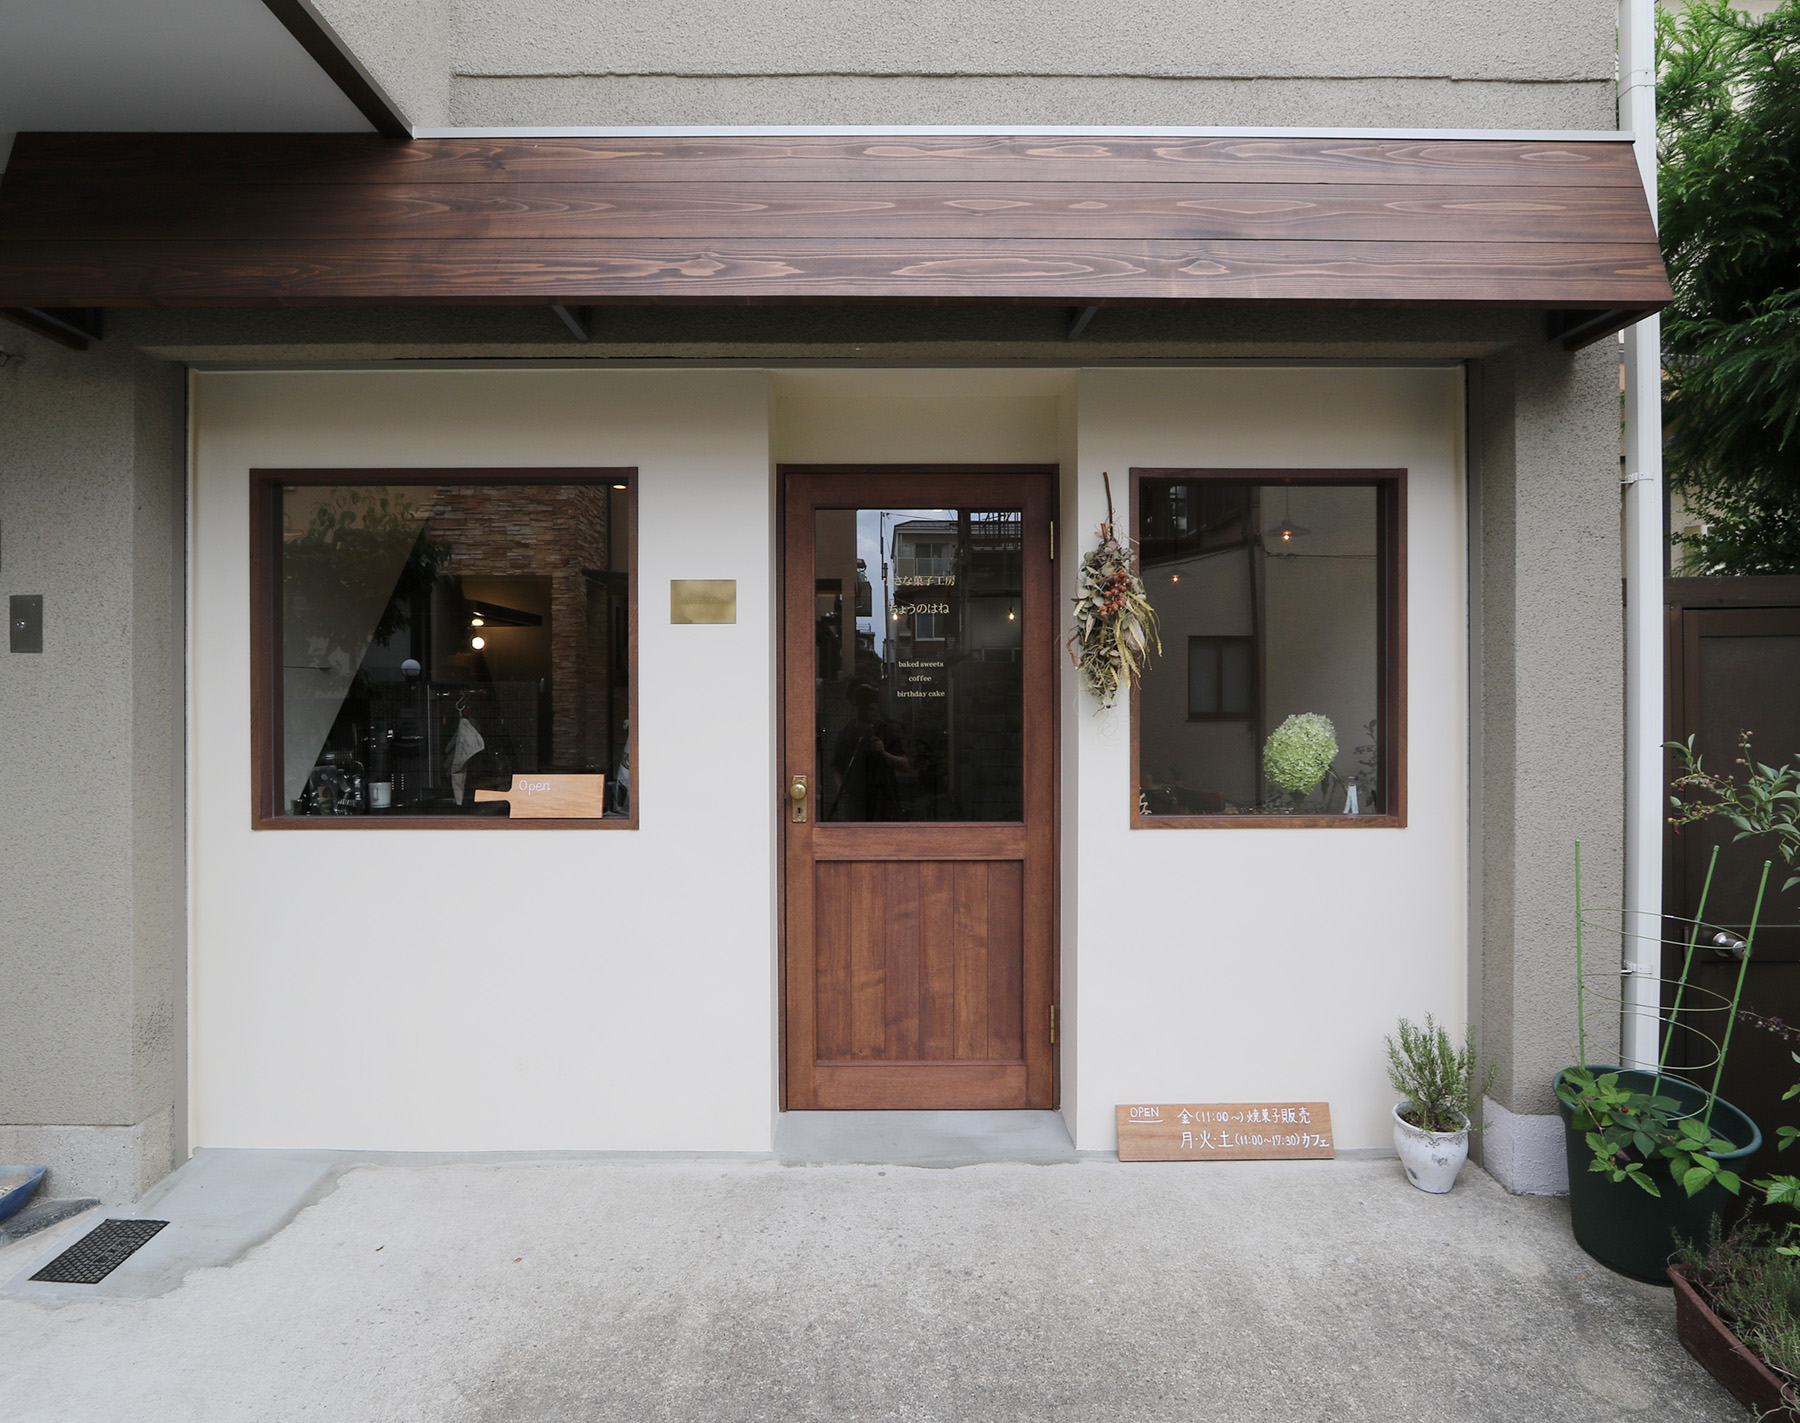  ご自宅のガレージを焼き菓子店へと改修工事。カフェデザイン 店舗デザイン 京都